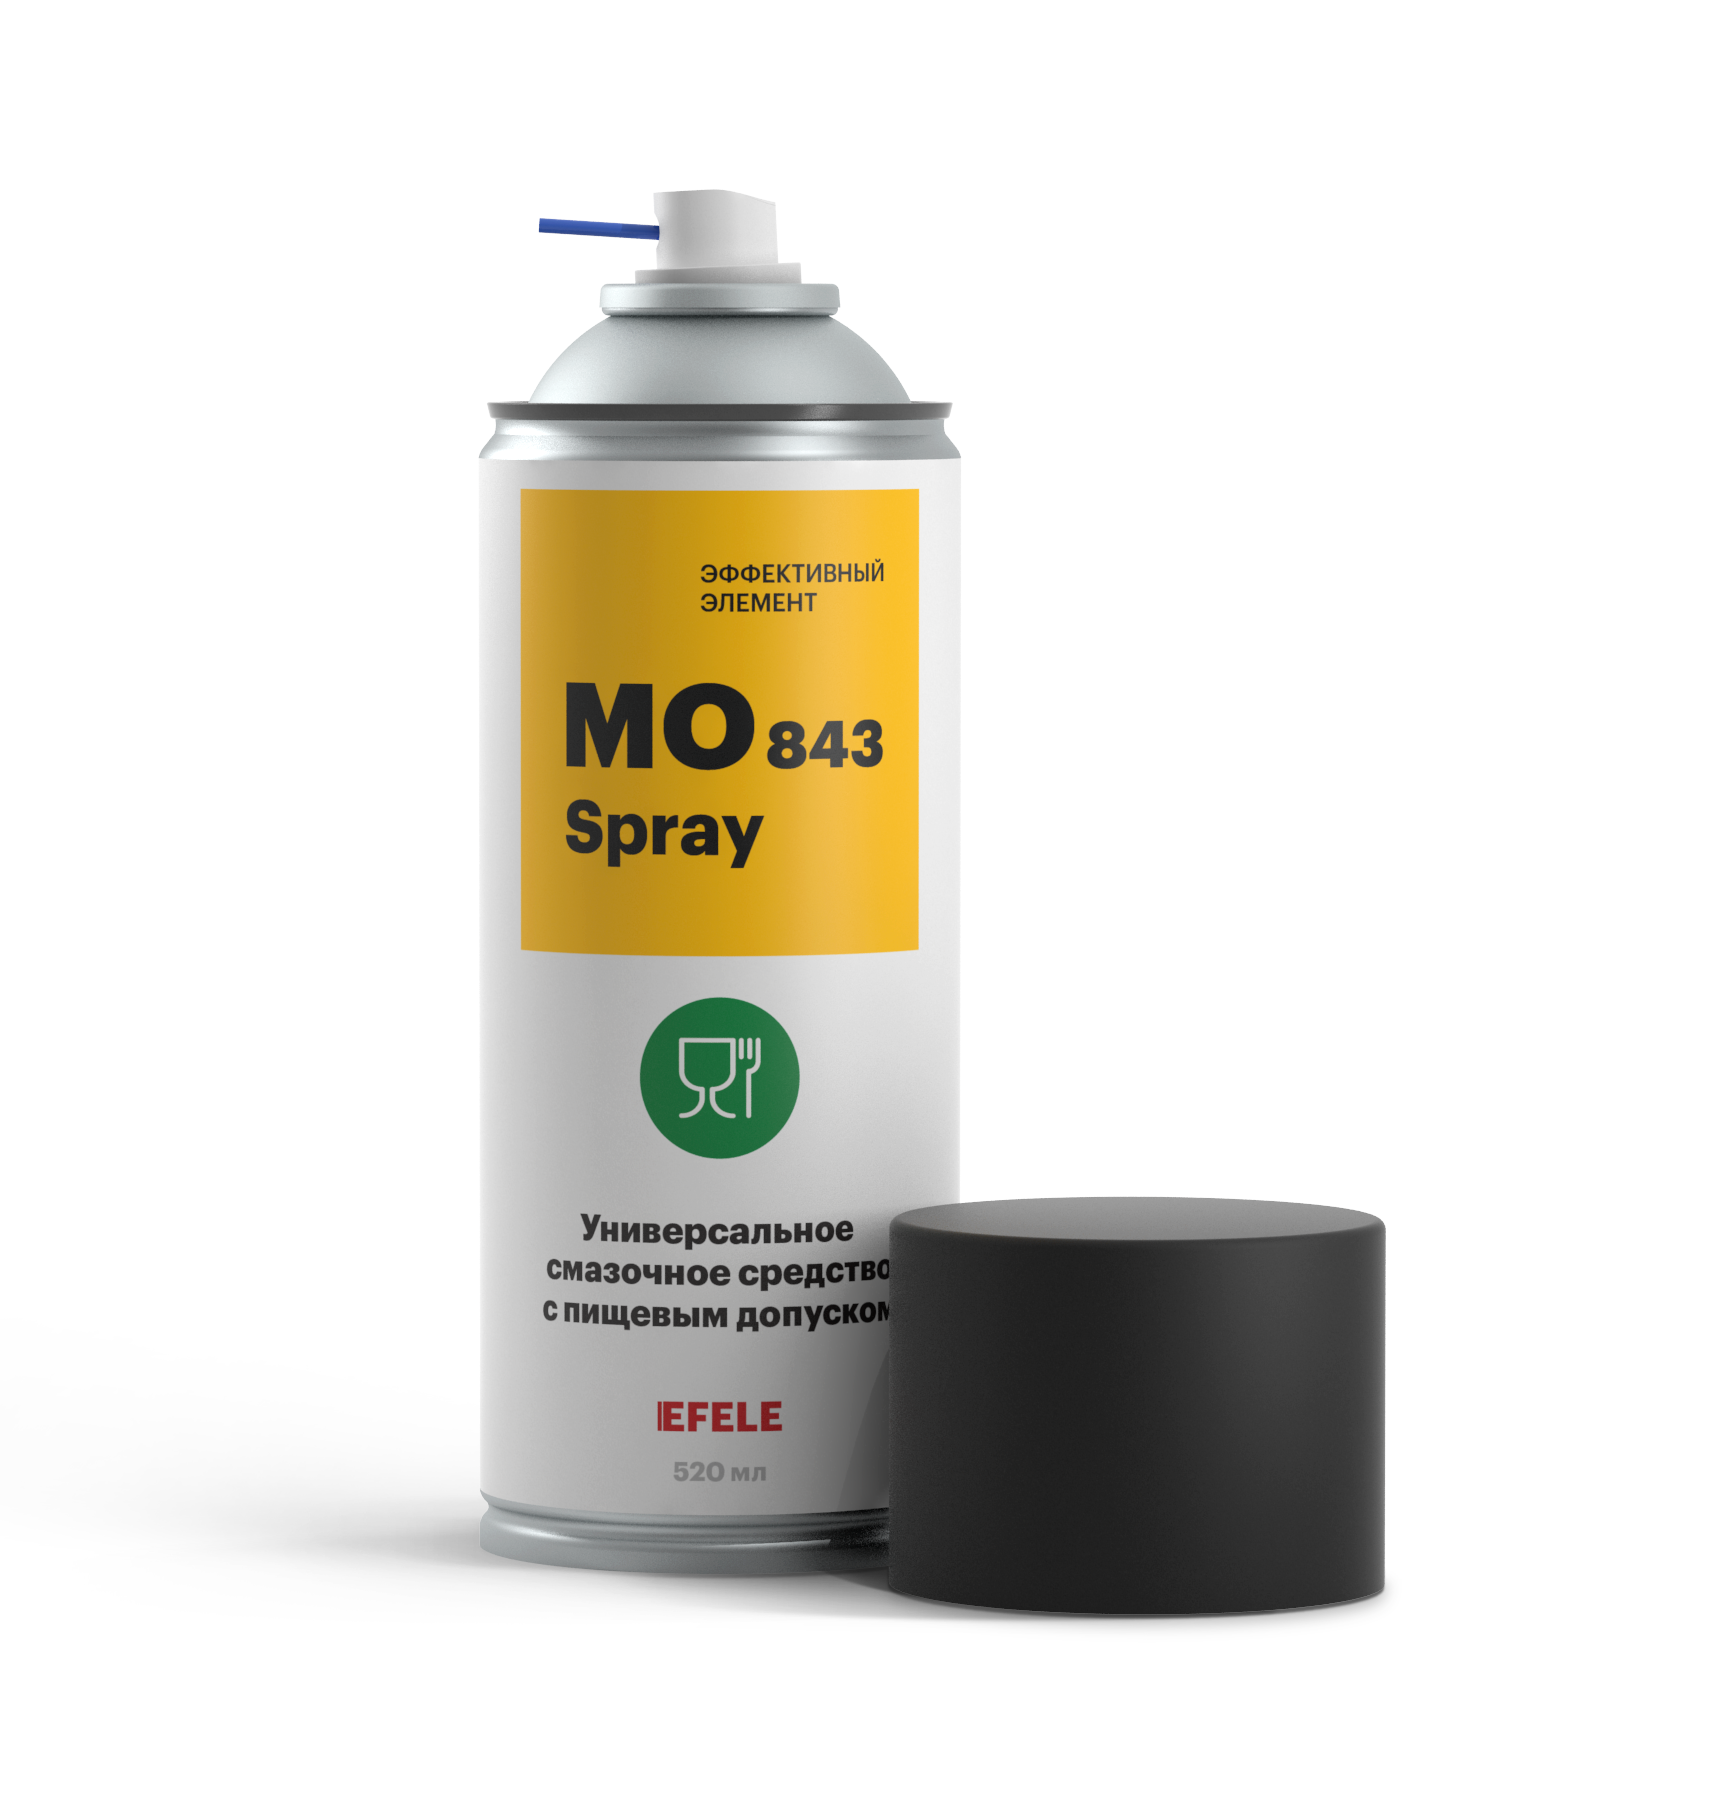 Масло универсальное с пищевым допуском Efele mo-843 spray (efl0093932)